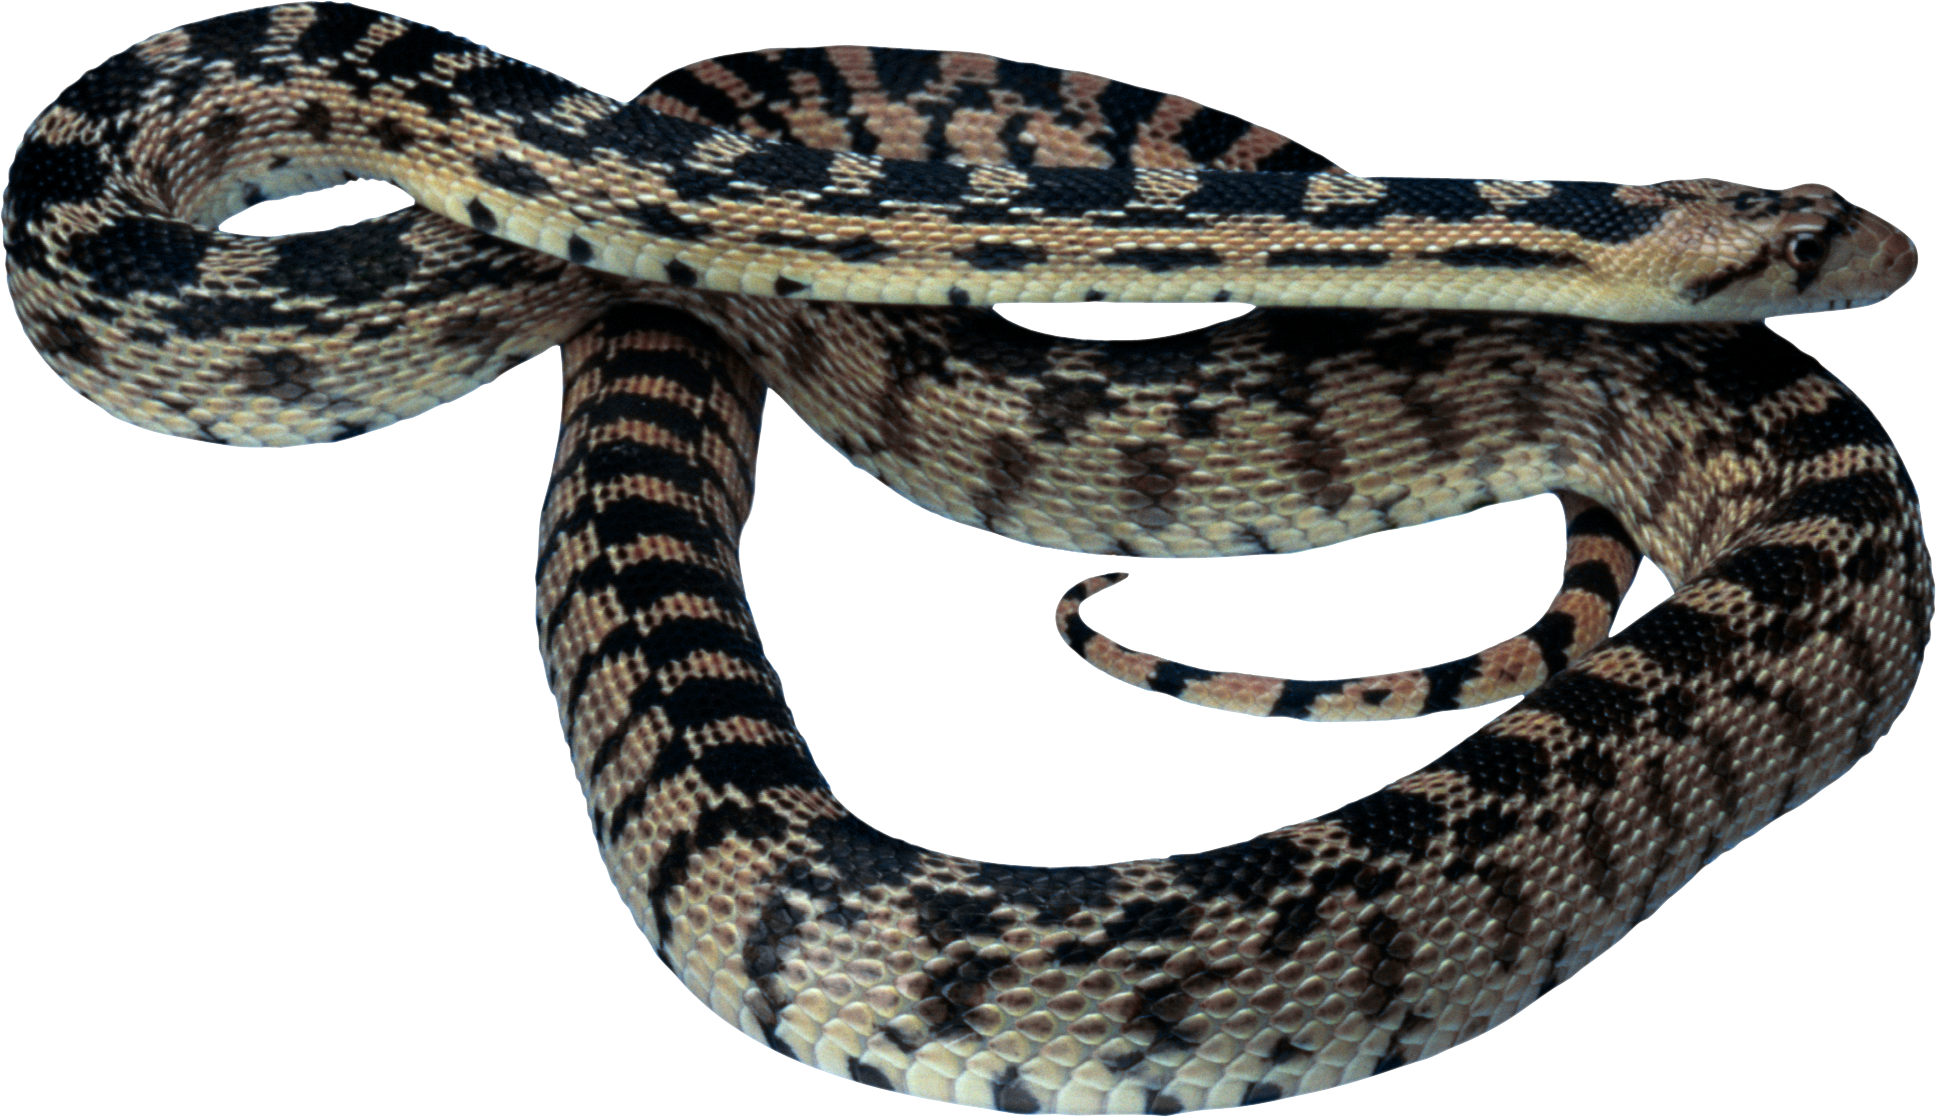 Змея PNG фото